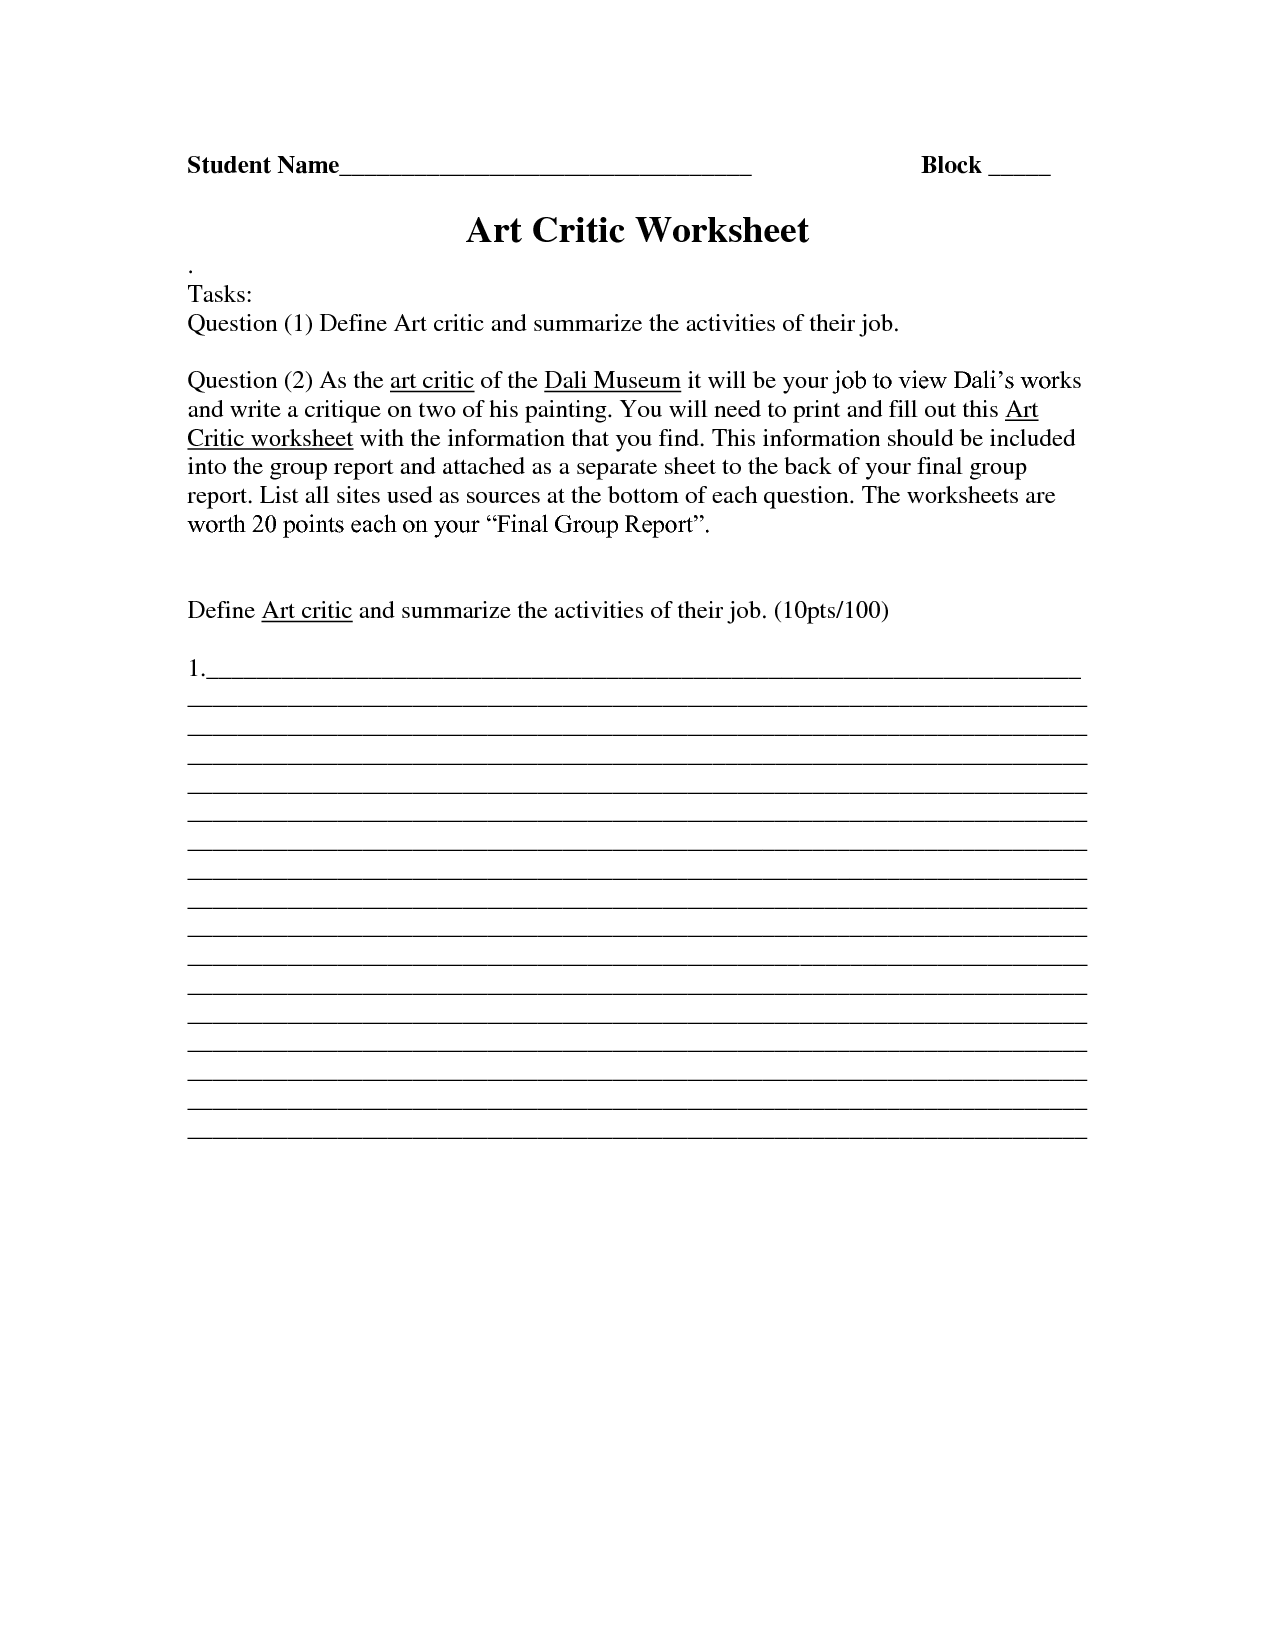 Art Critique Worksheet Image